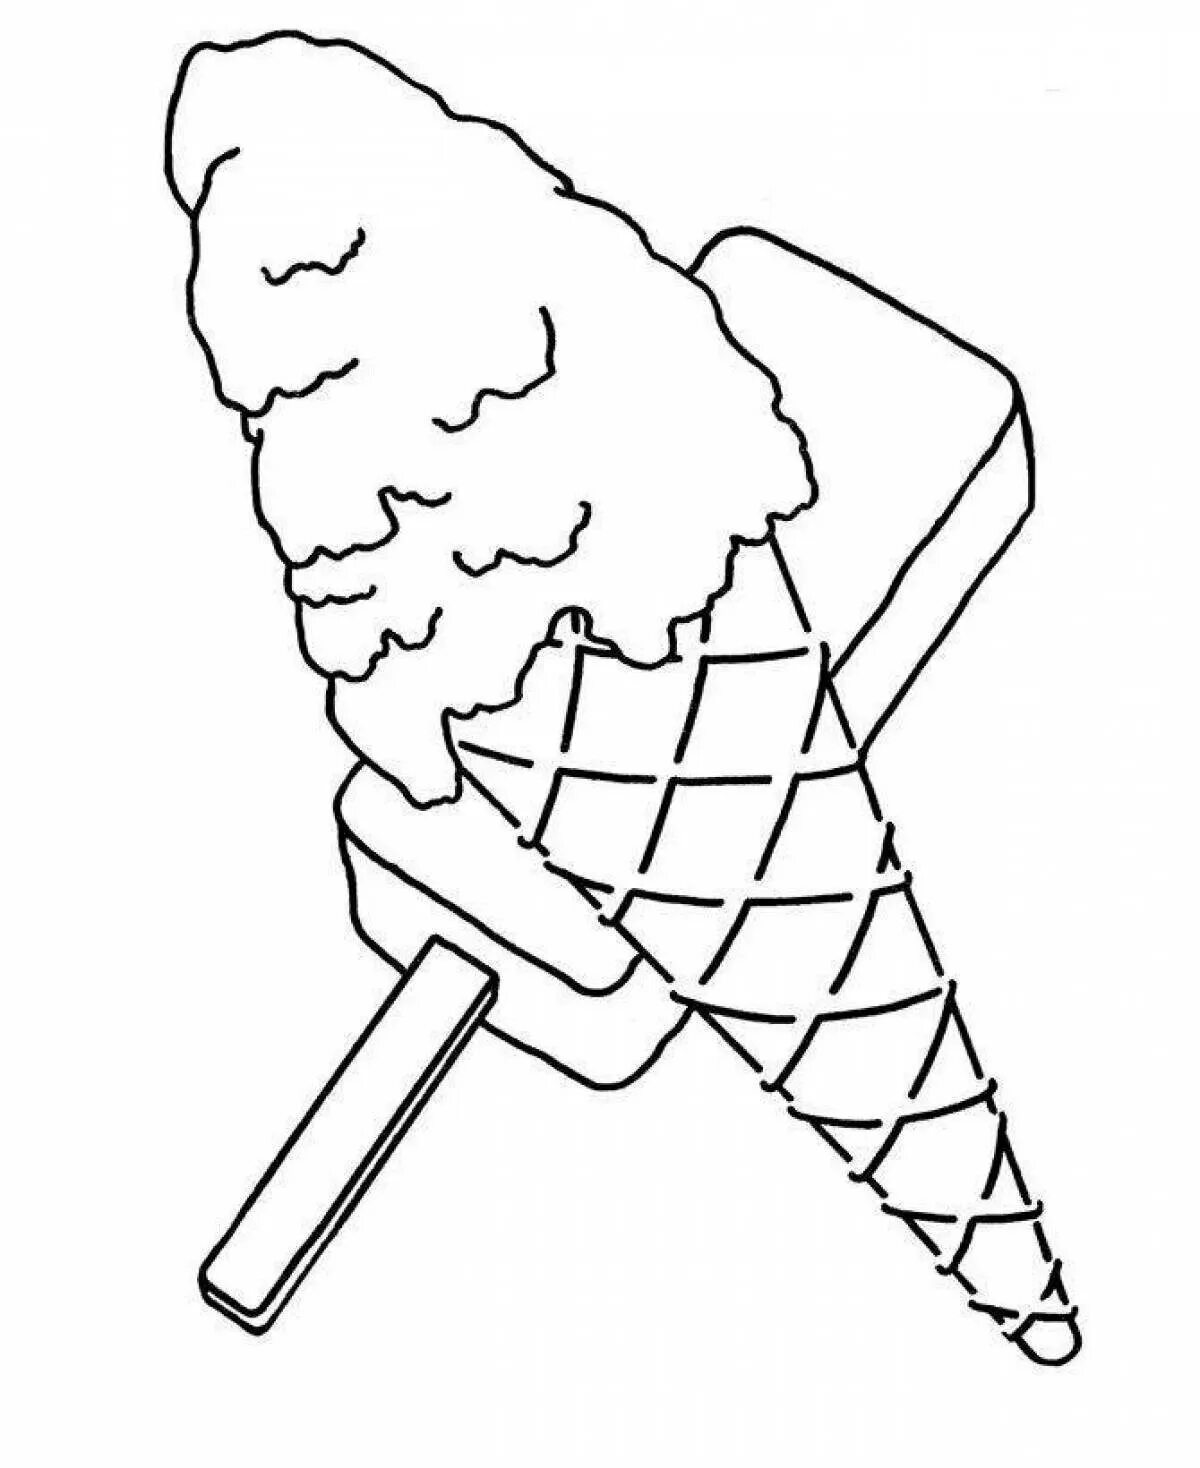 Раскраска мороженки. Раскраска мороженое рожок. Мороженое раскраска для детей. Раскраска МО РО же но е. Эскимо раскраска.